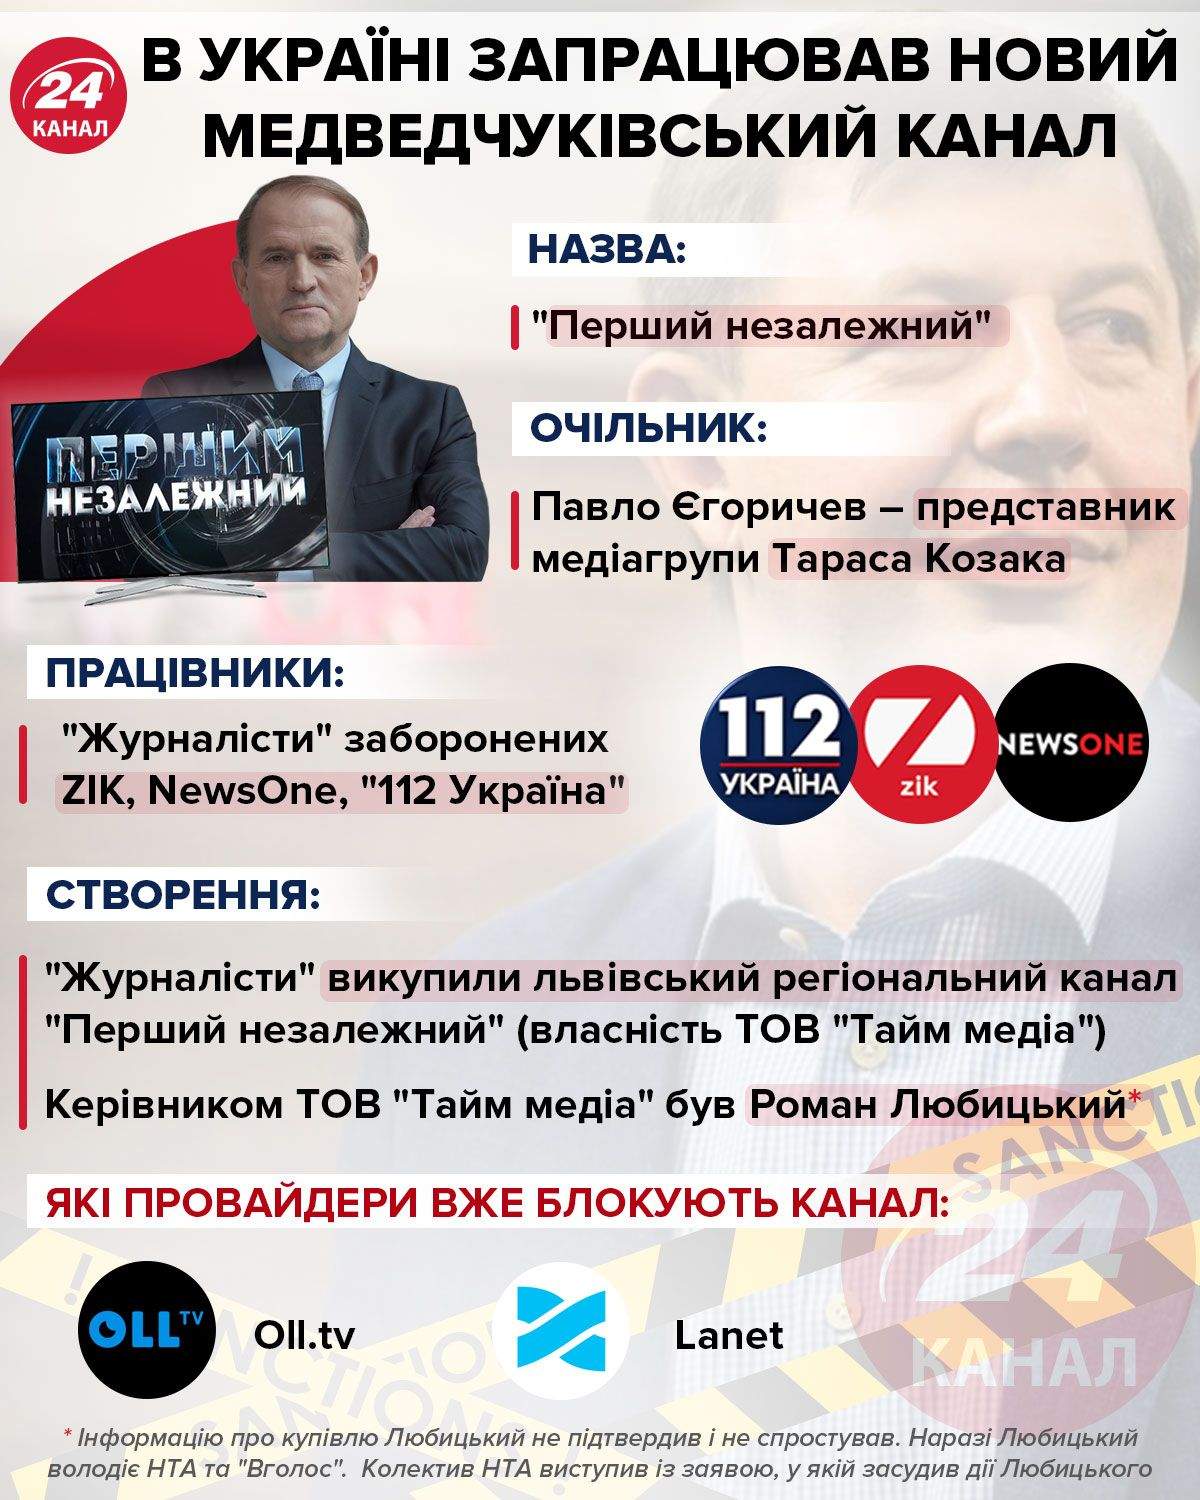 В Украине заработал новый медведчуковский канал / Инфографика 24 канала